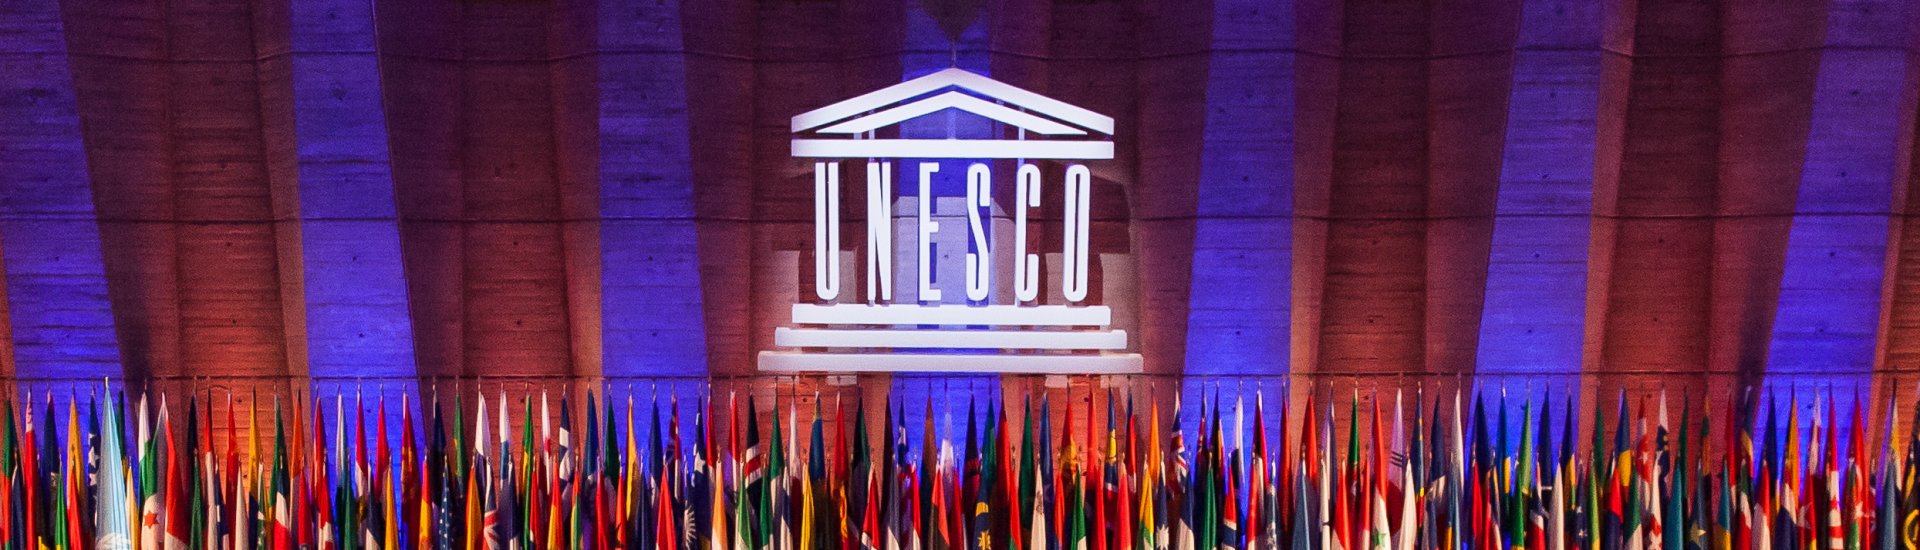 De Algemene Conferentie van Unesco (Foto: Unesco.org | Fabrice Gentile)